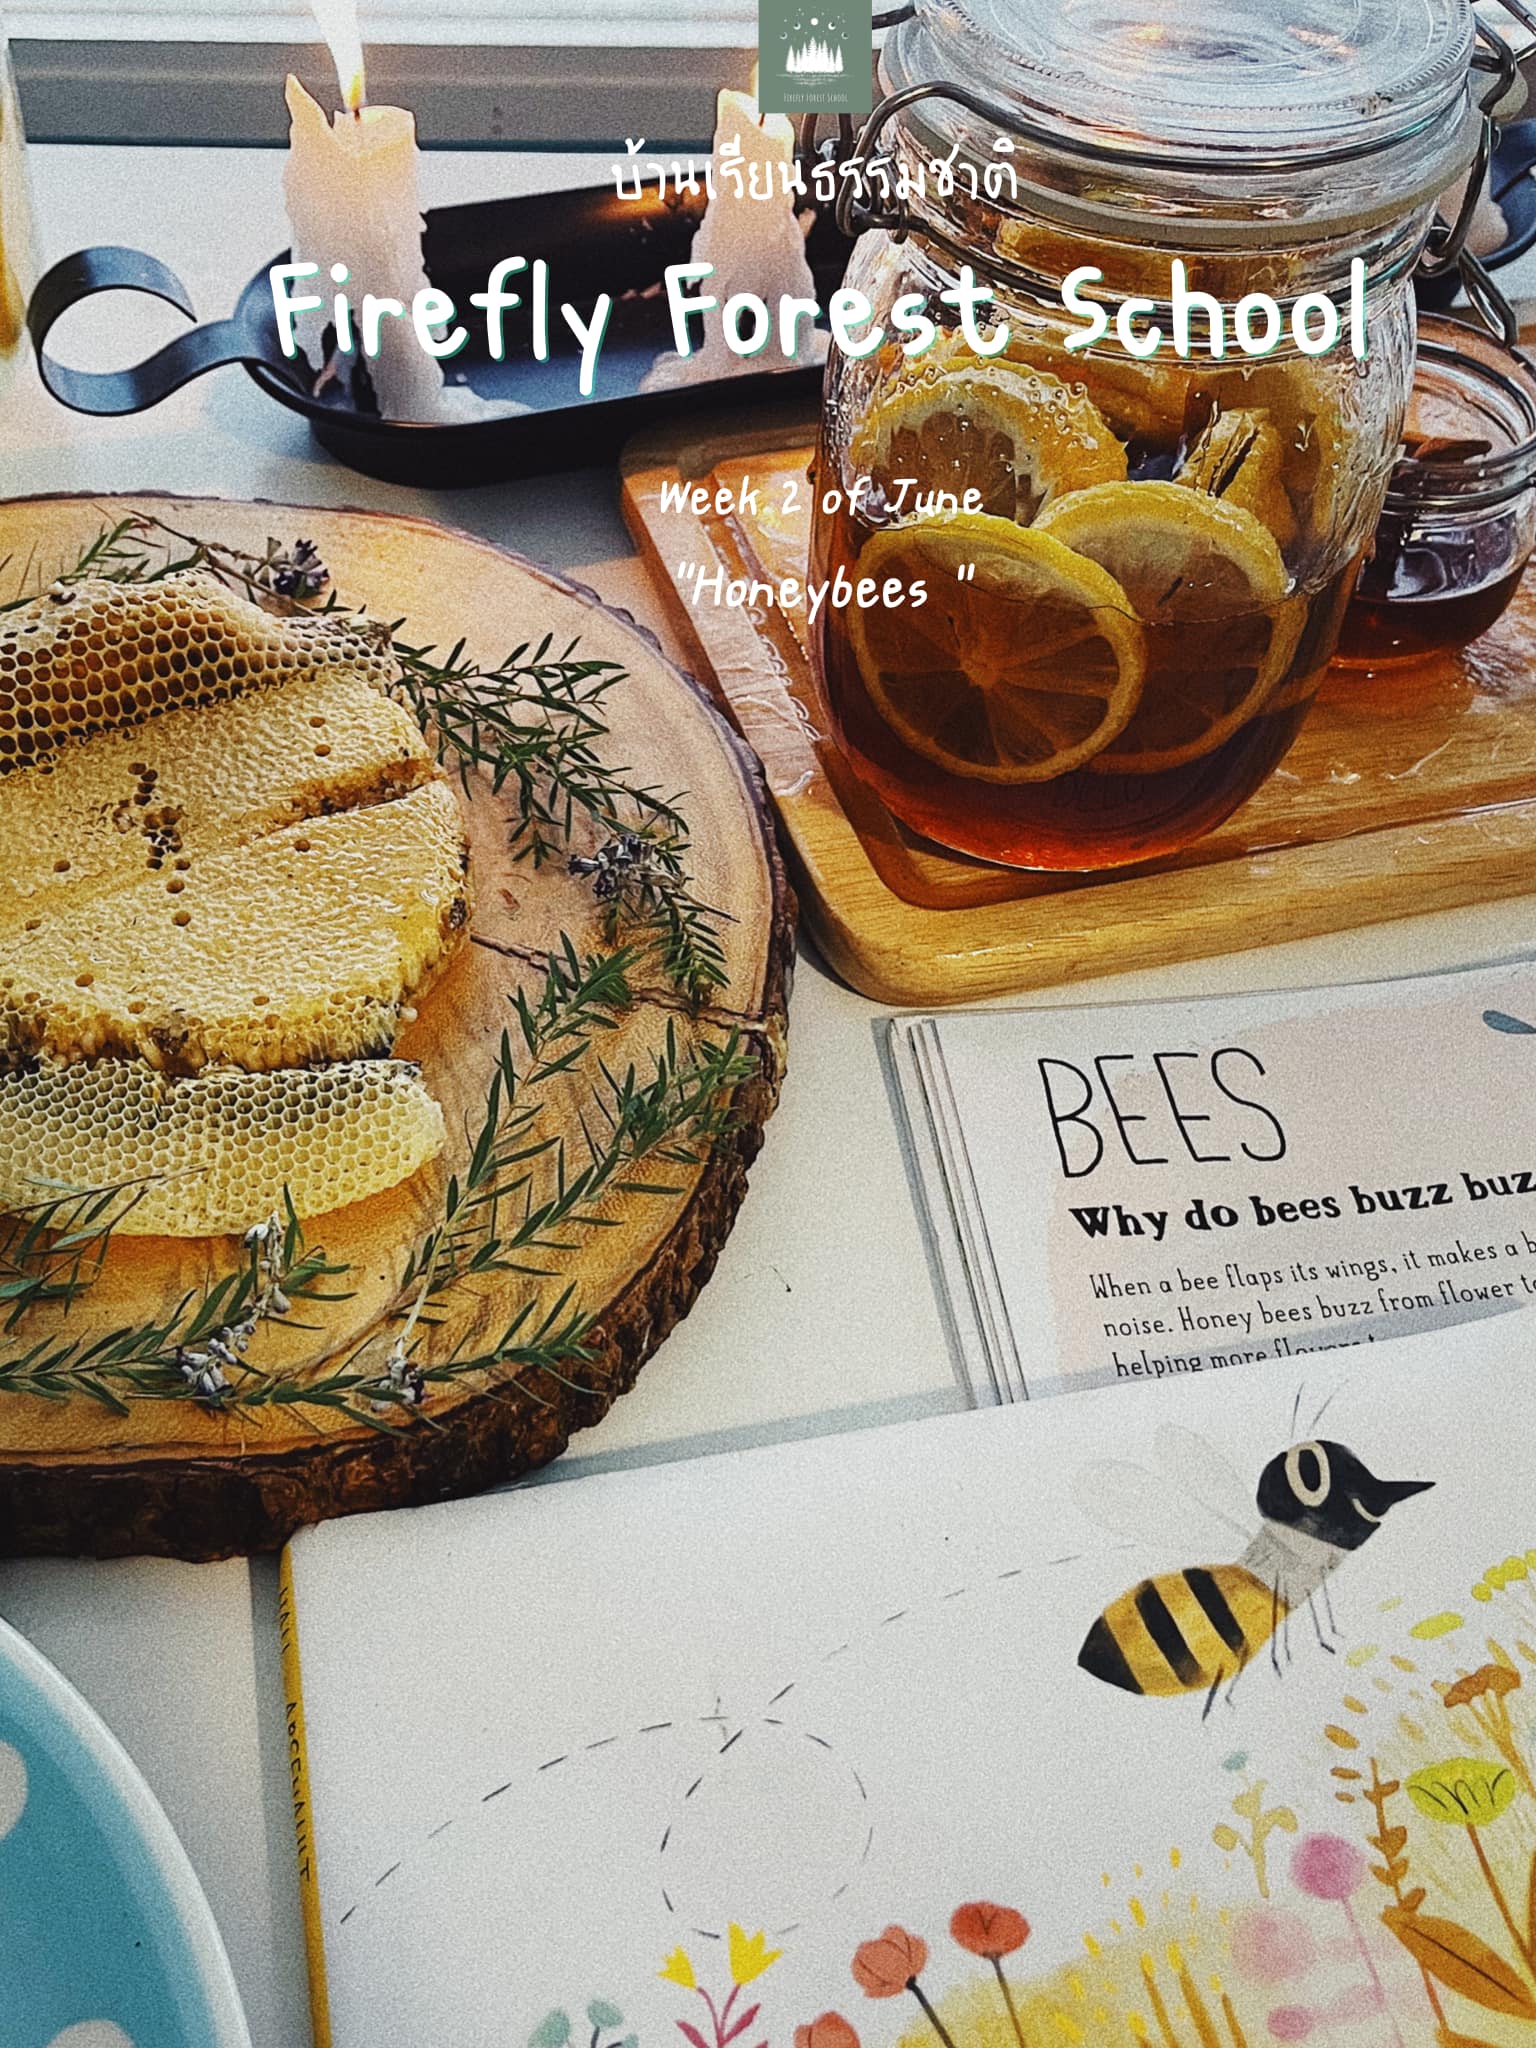 สัปดาห์นี้ของพวกเรา เราเรียนกันเรื่องผึ้งค้าบบ ชวนเพื่อนๆมาทำความรู้จักผึ้งน้อยแ...